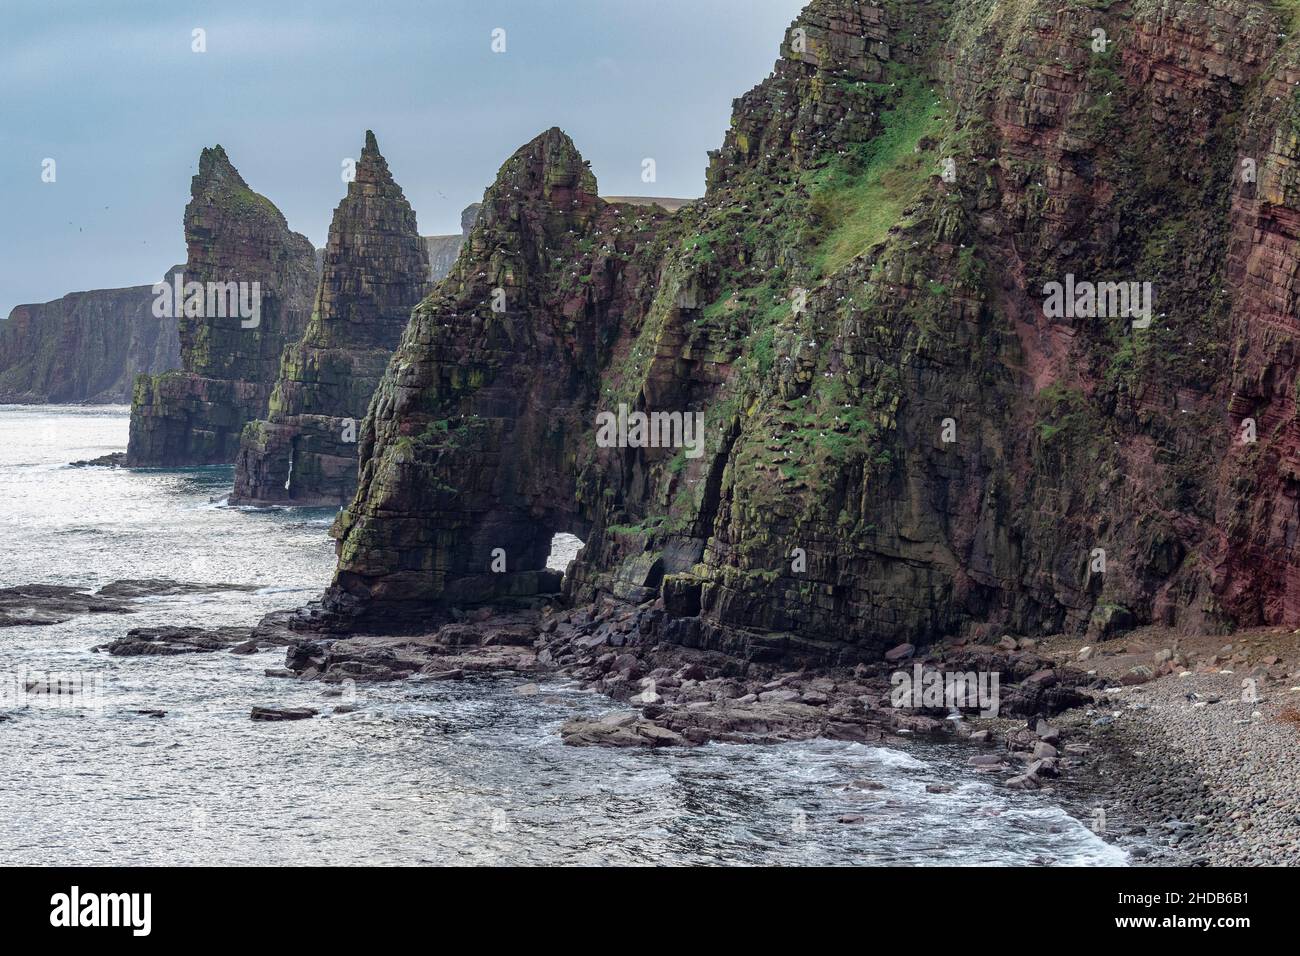 Les piles de mer et les falaises de Duncansby Head, la partie la plus au nord-est des terres principales écossaises et britanniques, légèrement au nord-est de John o' Gro Banque D'Images